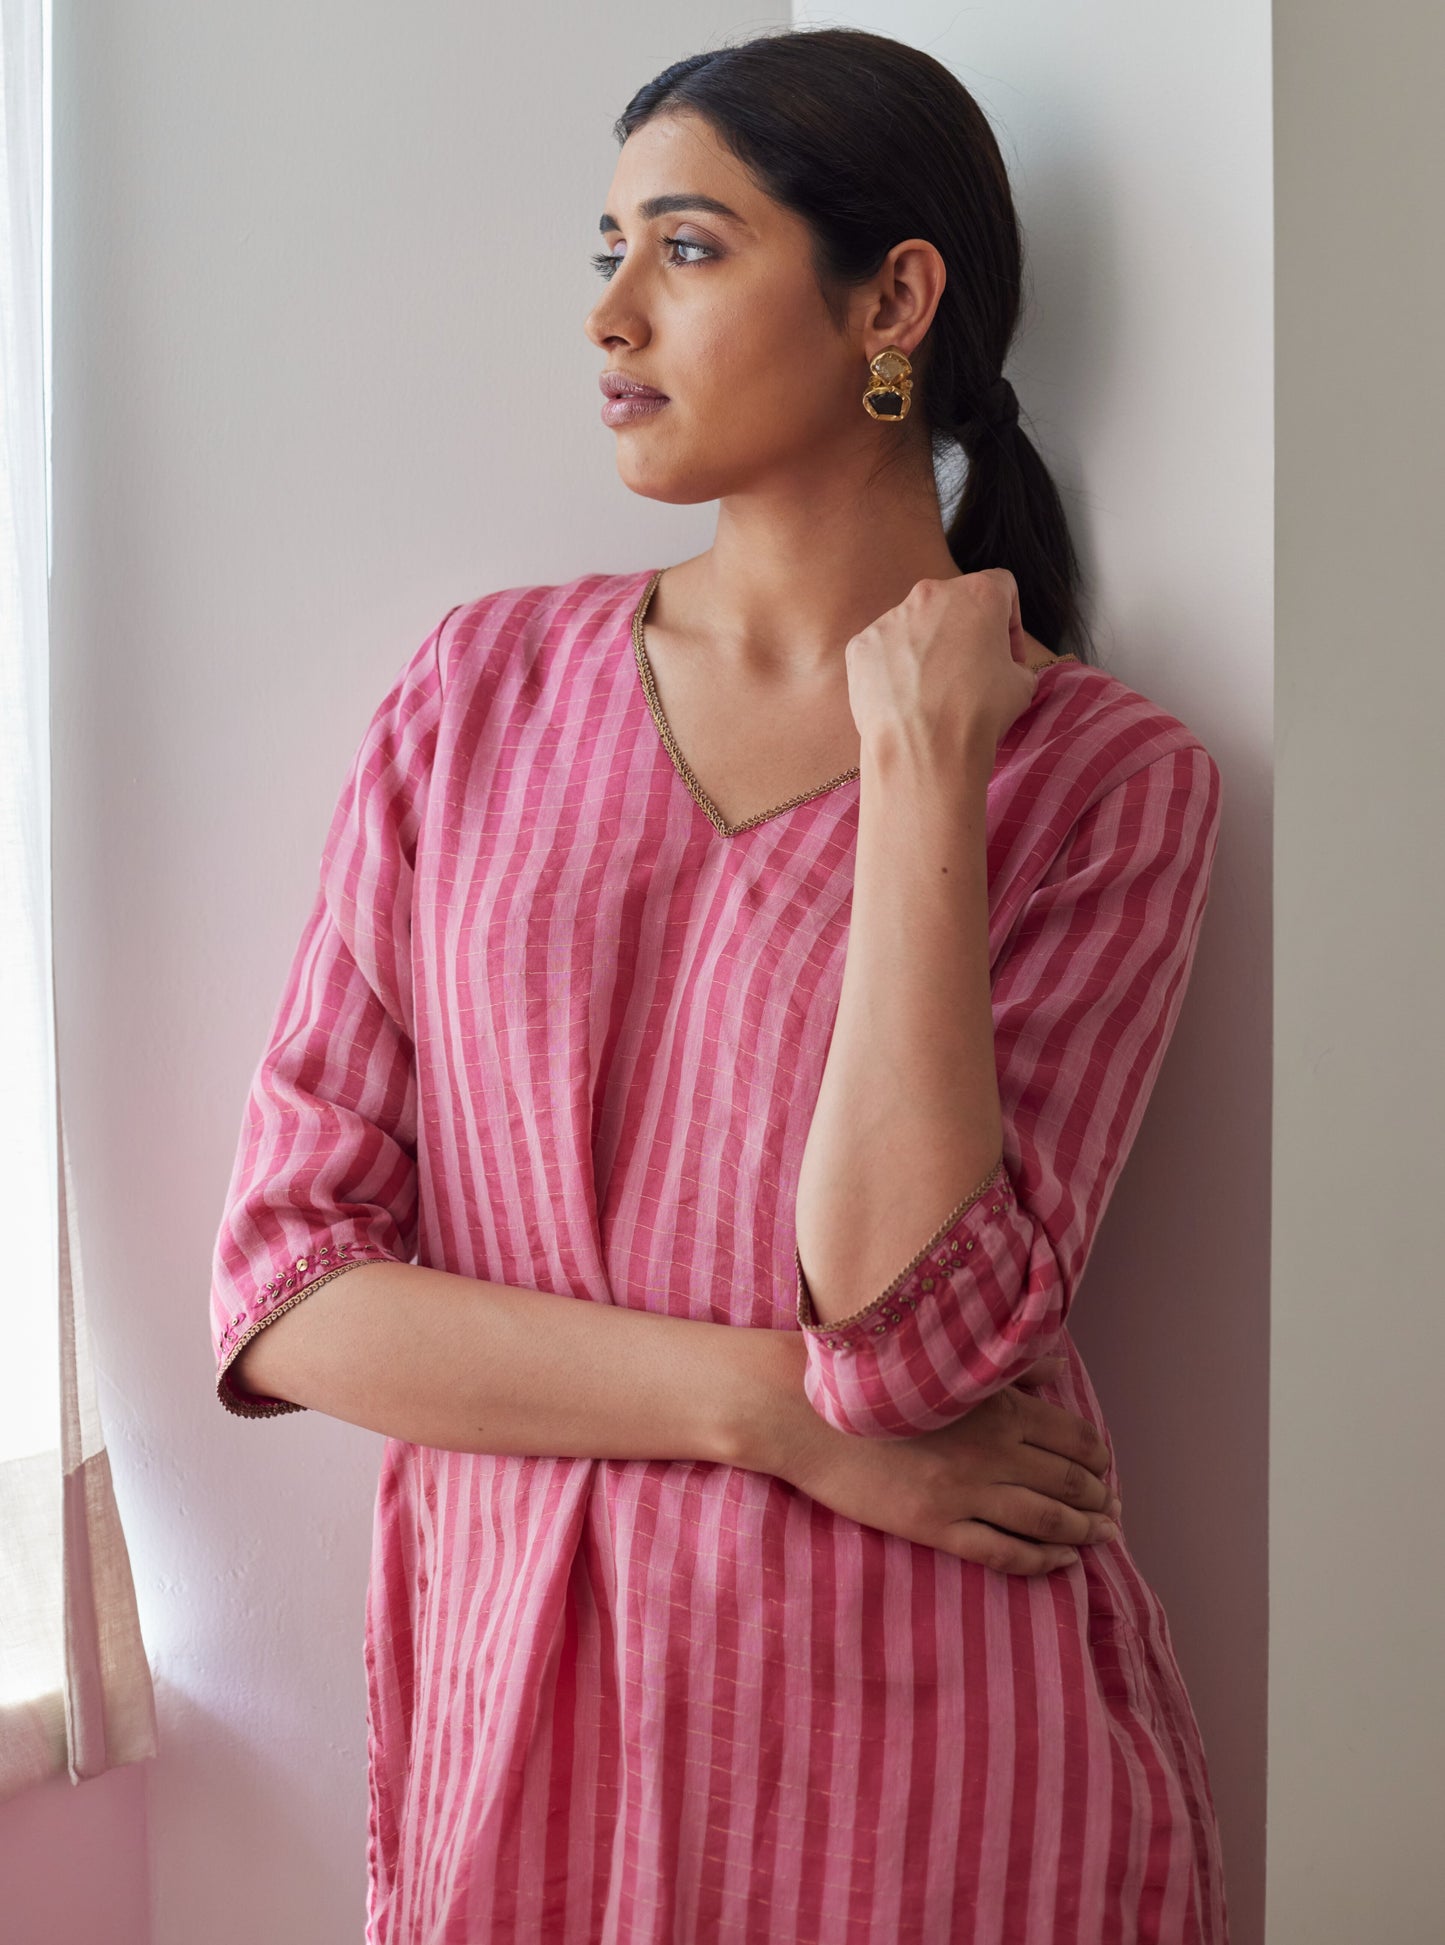 Anu Kurta in Pink Patti Organza Silk with Pants